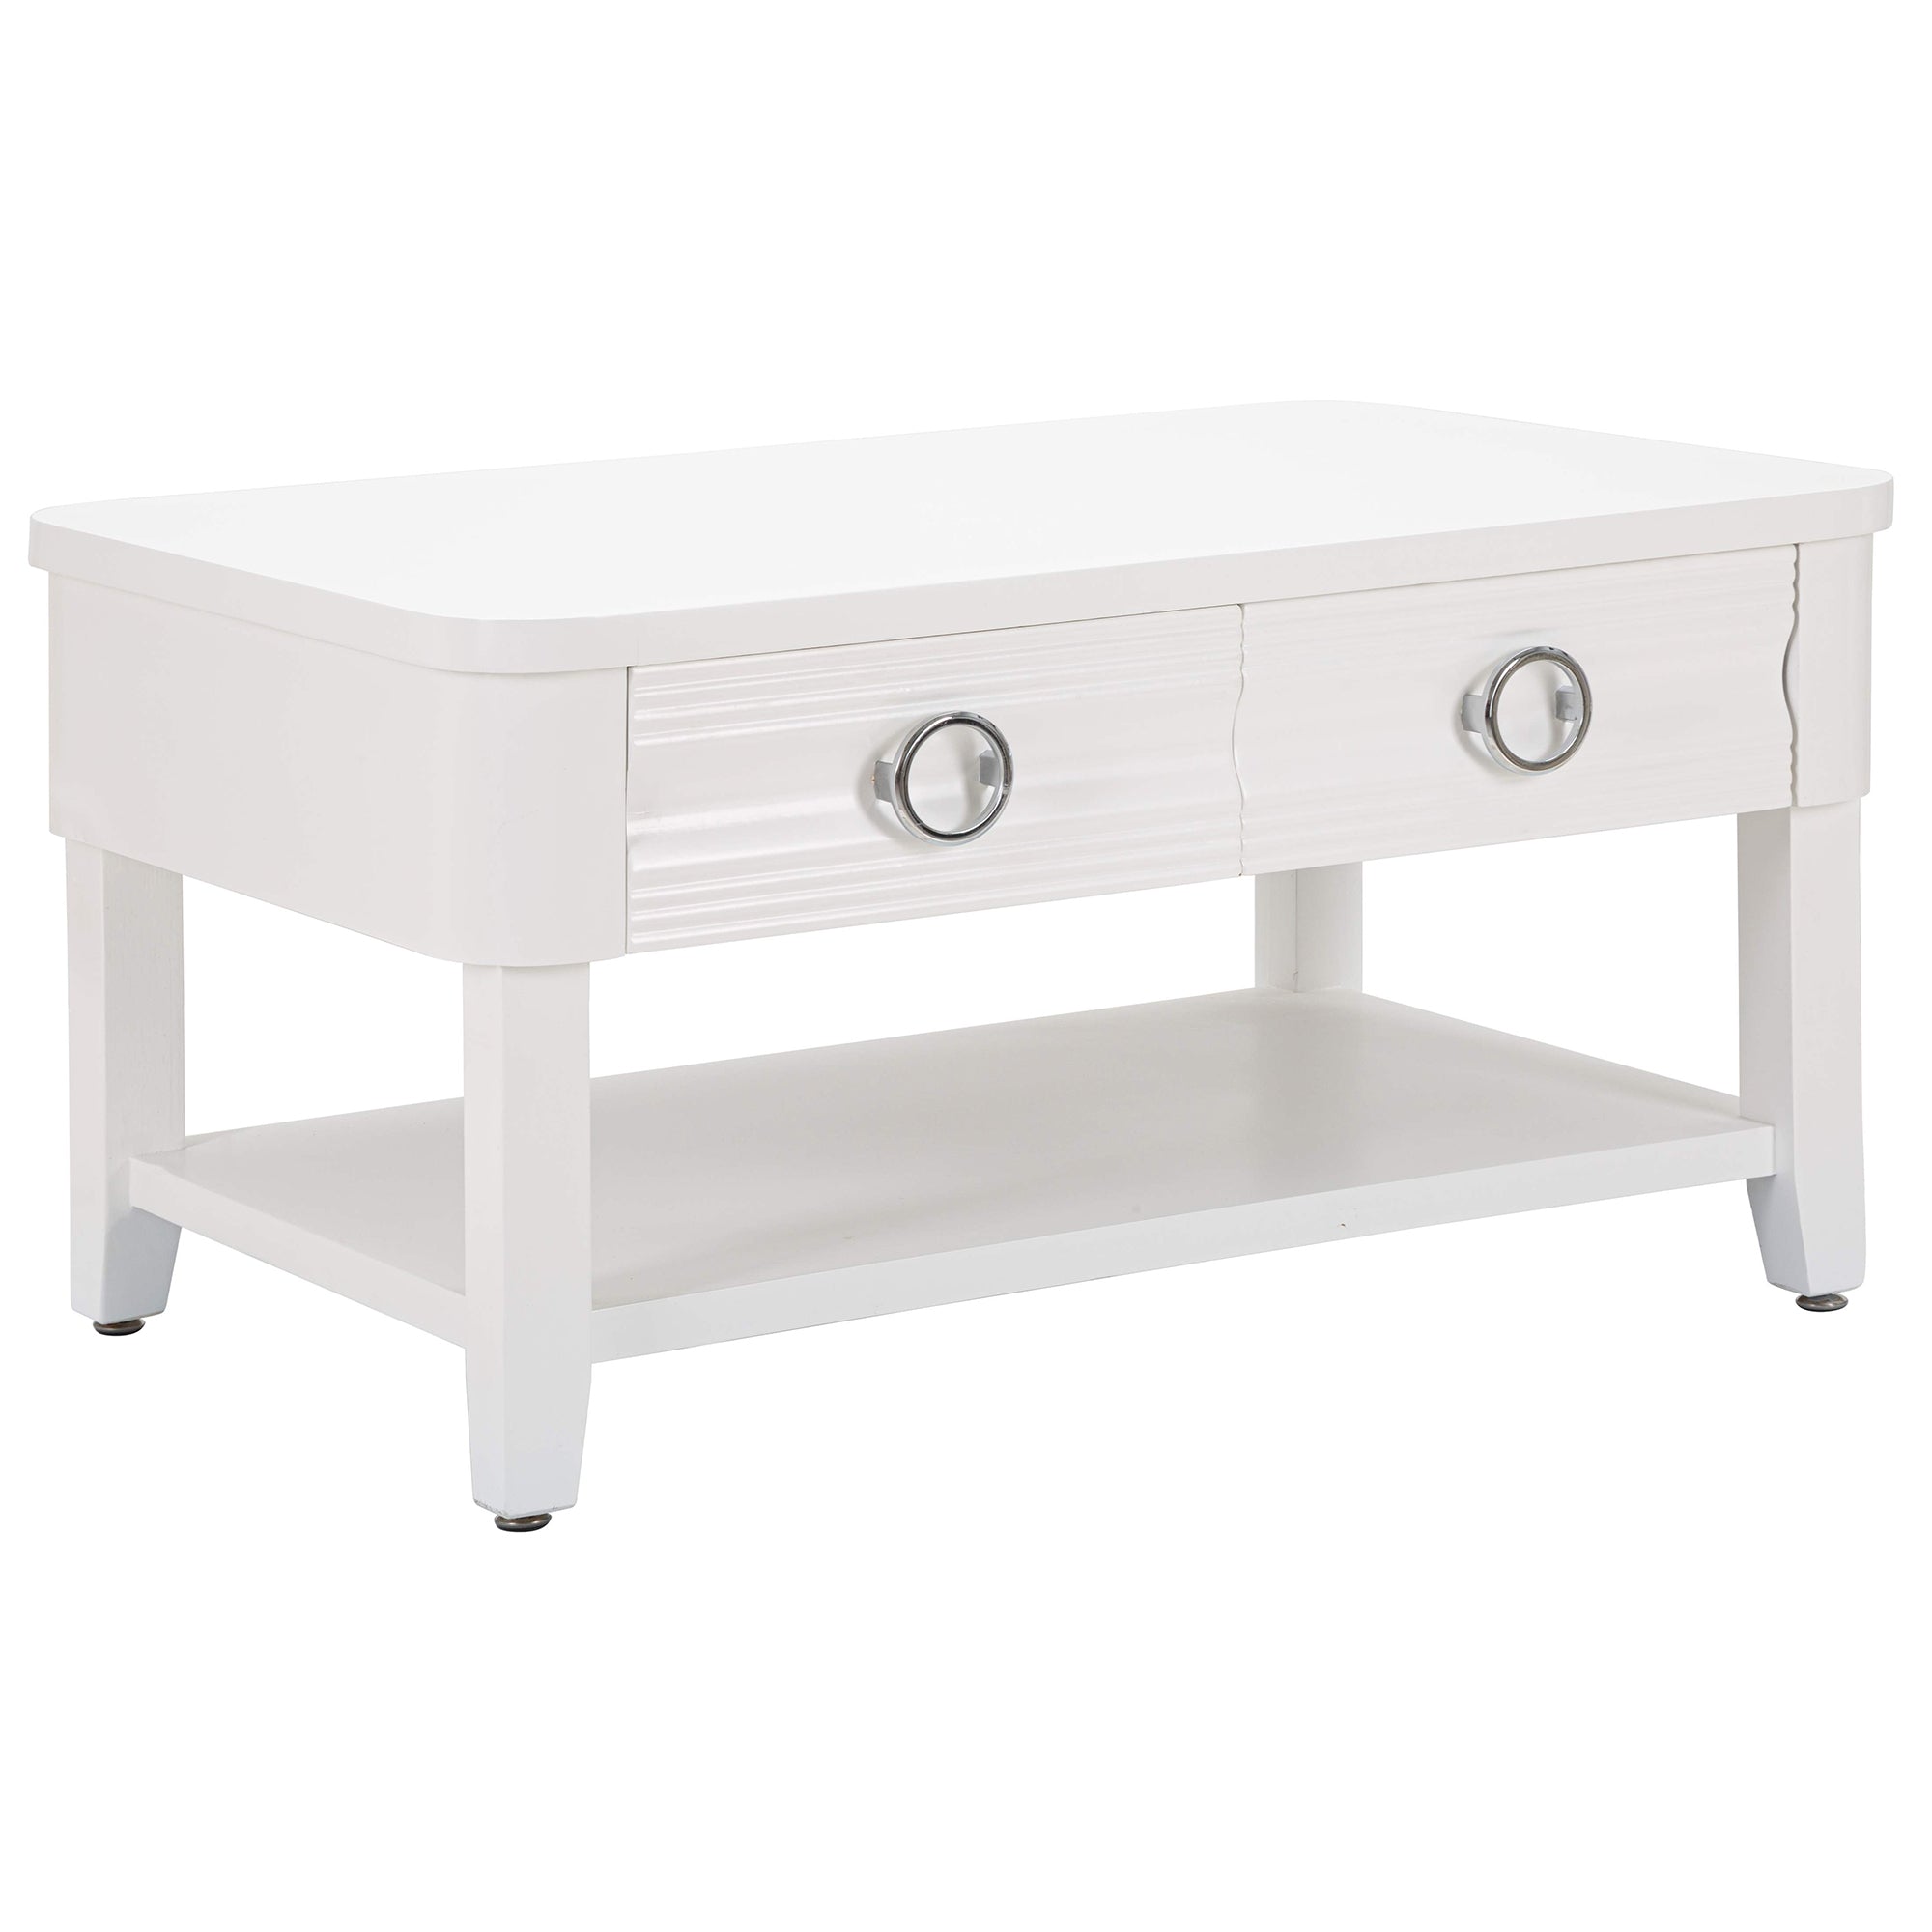 Table basse rectangulaire LOGAN en bois blanc